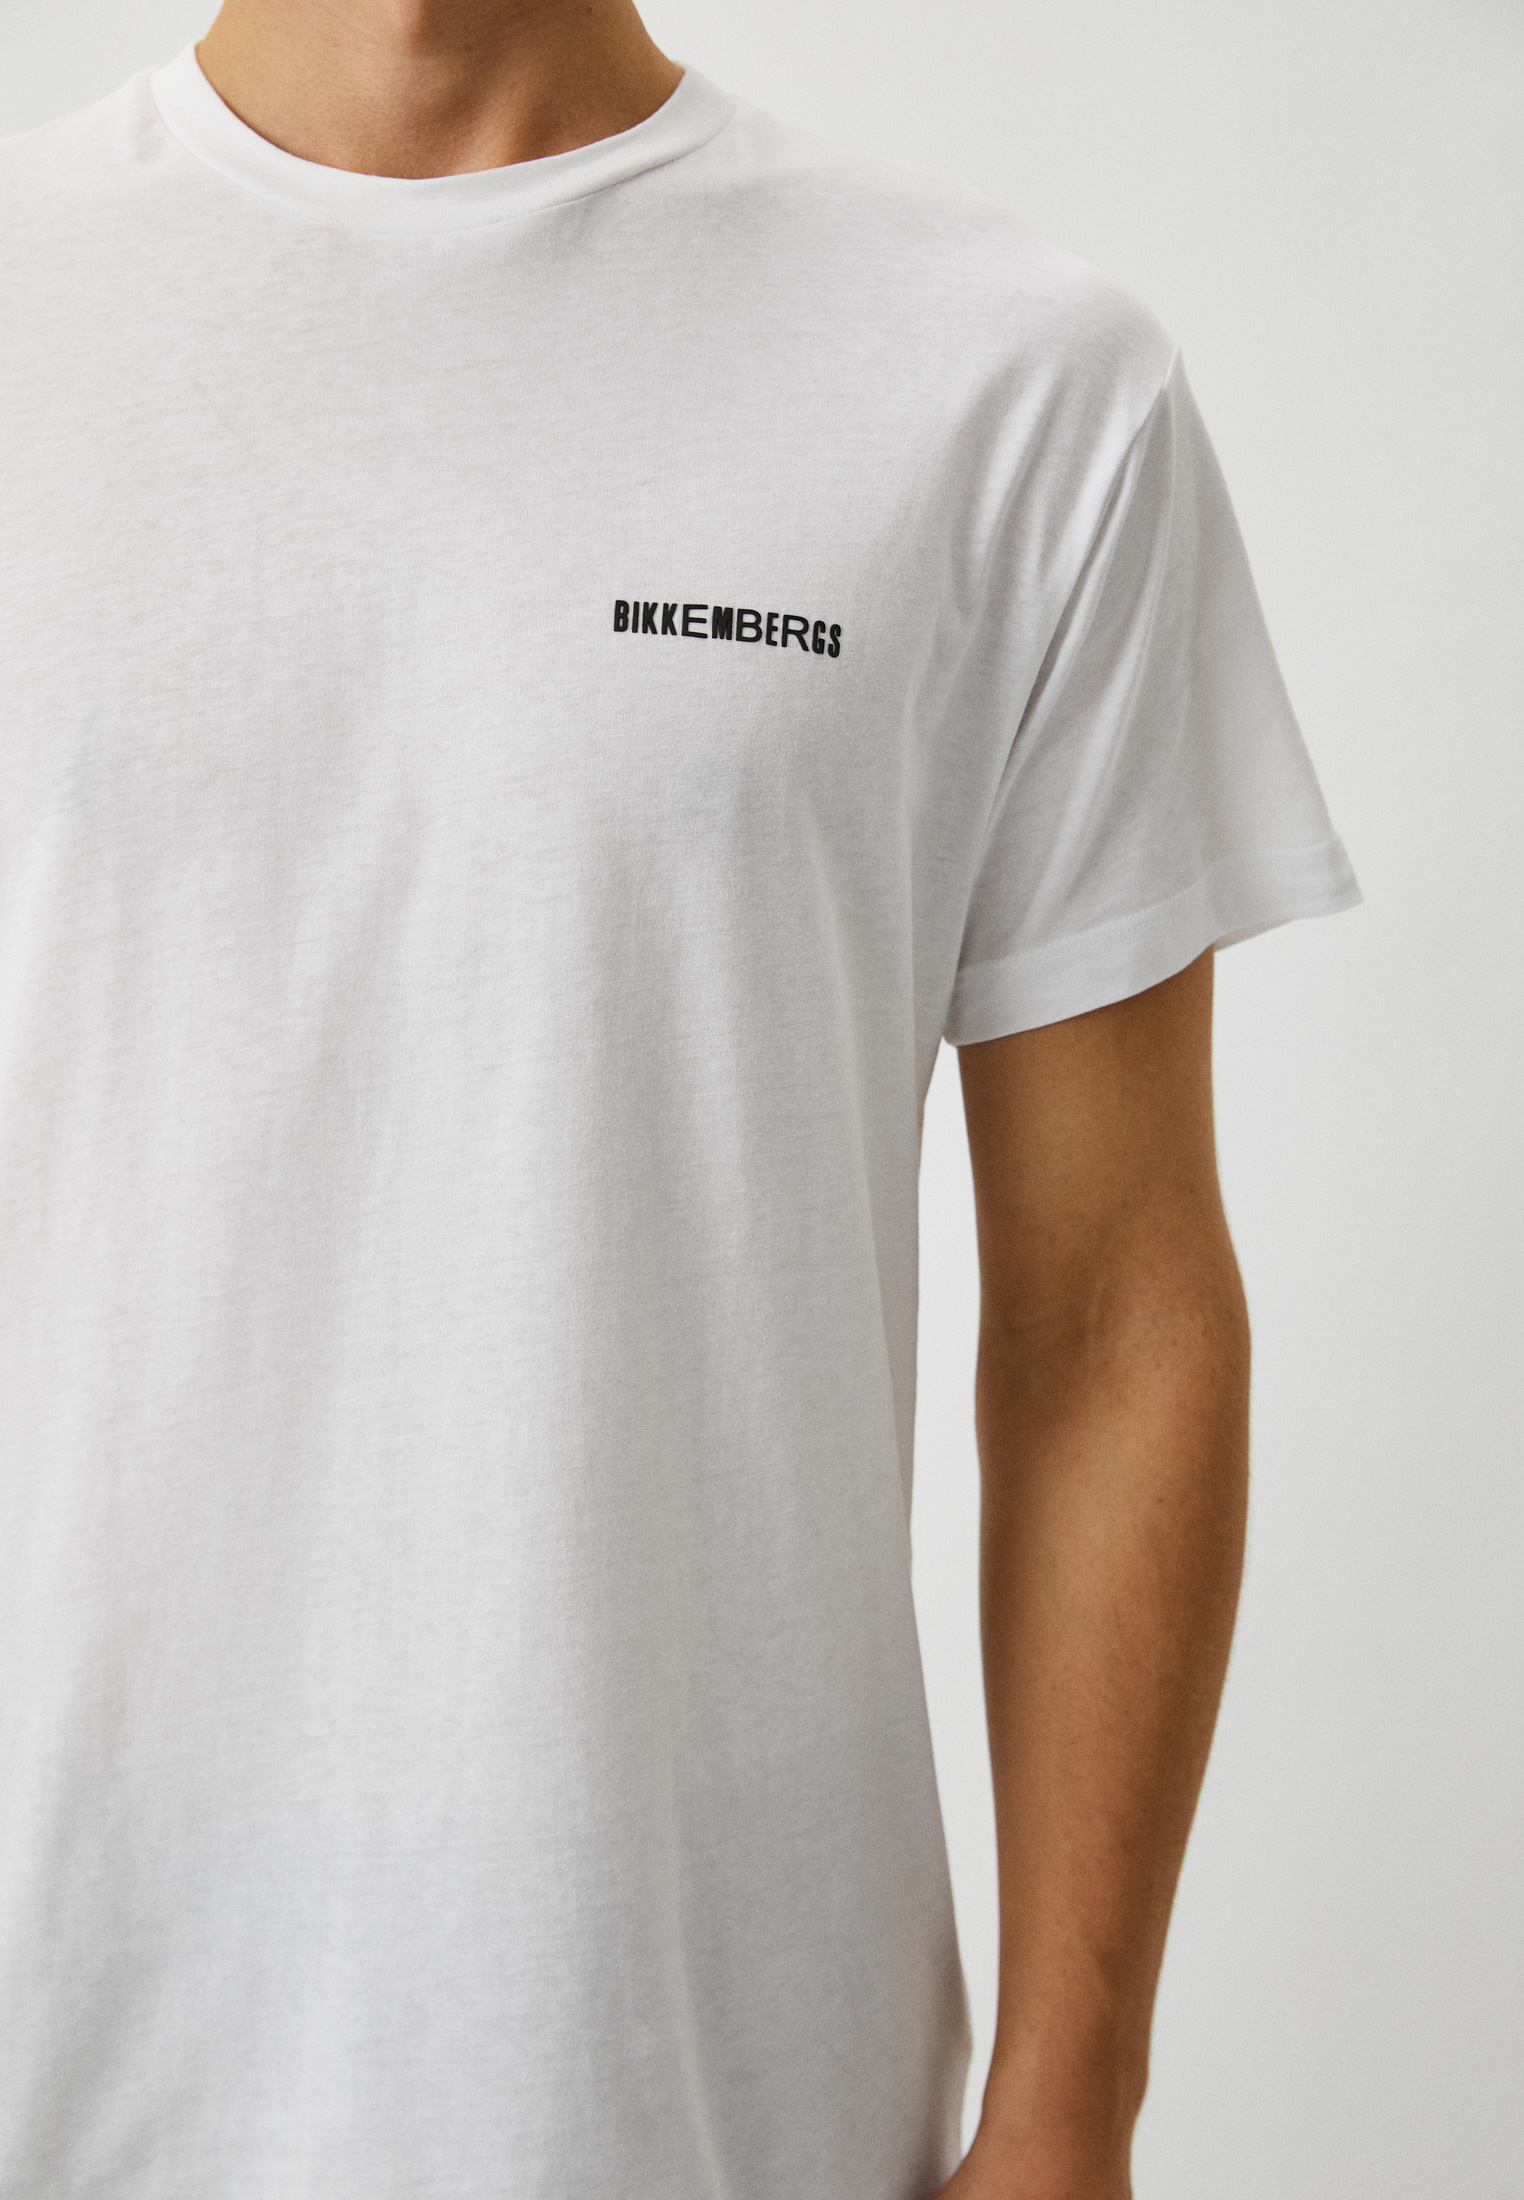 Мужская футболка Bikkembergs (Биккембергс) C 4 114 14 M 3876: изображение 4